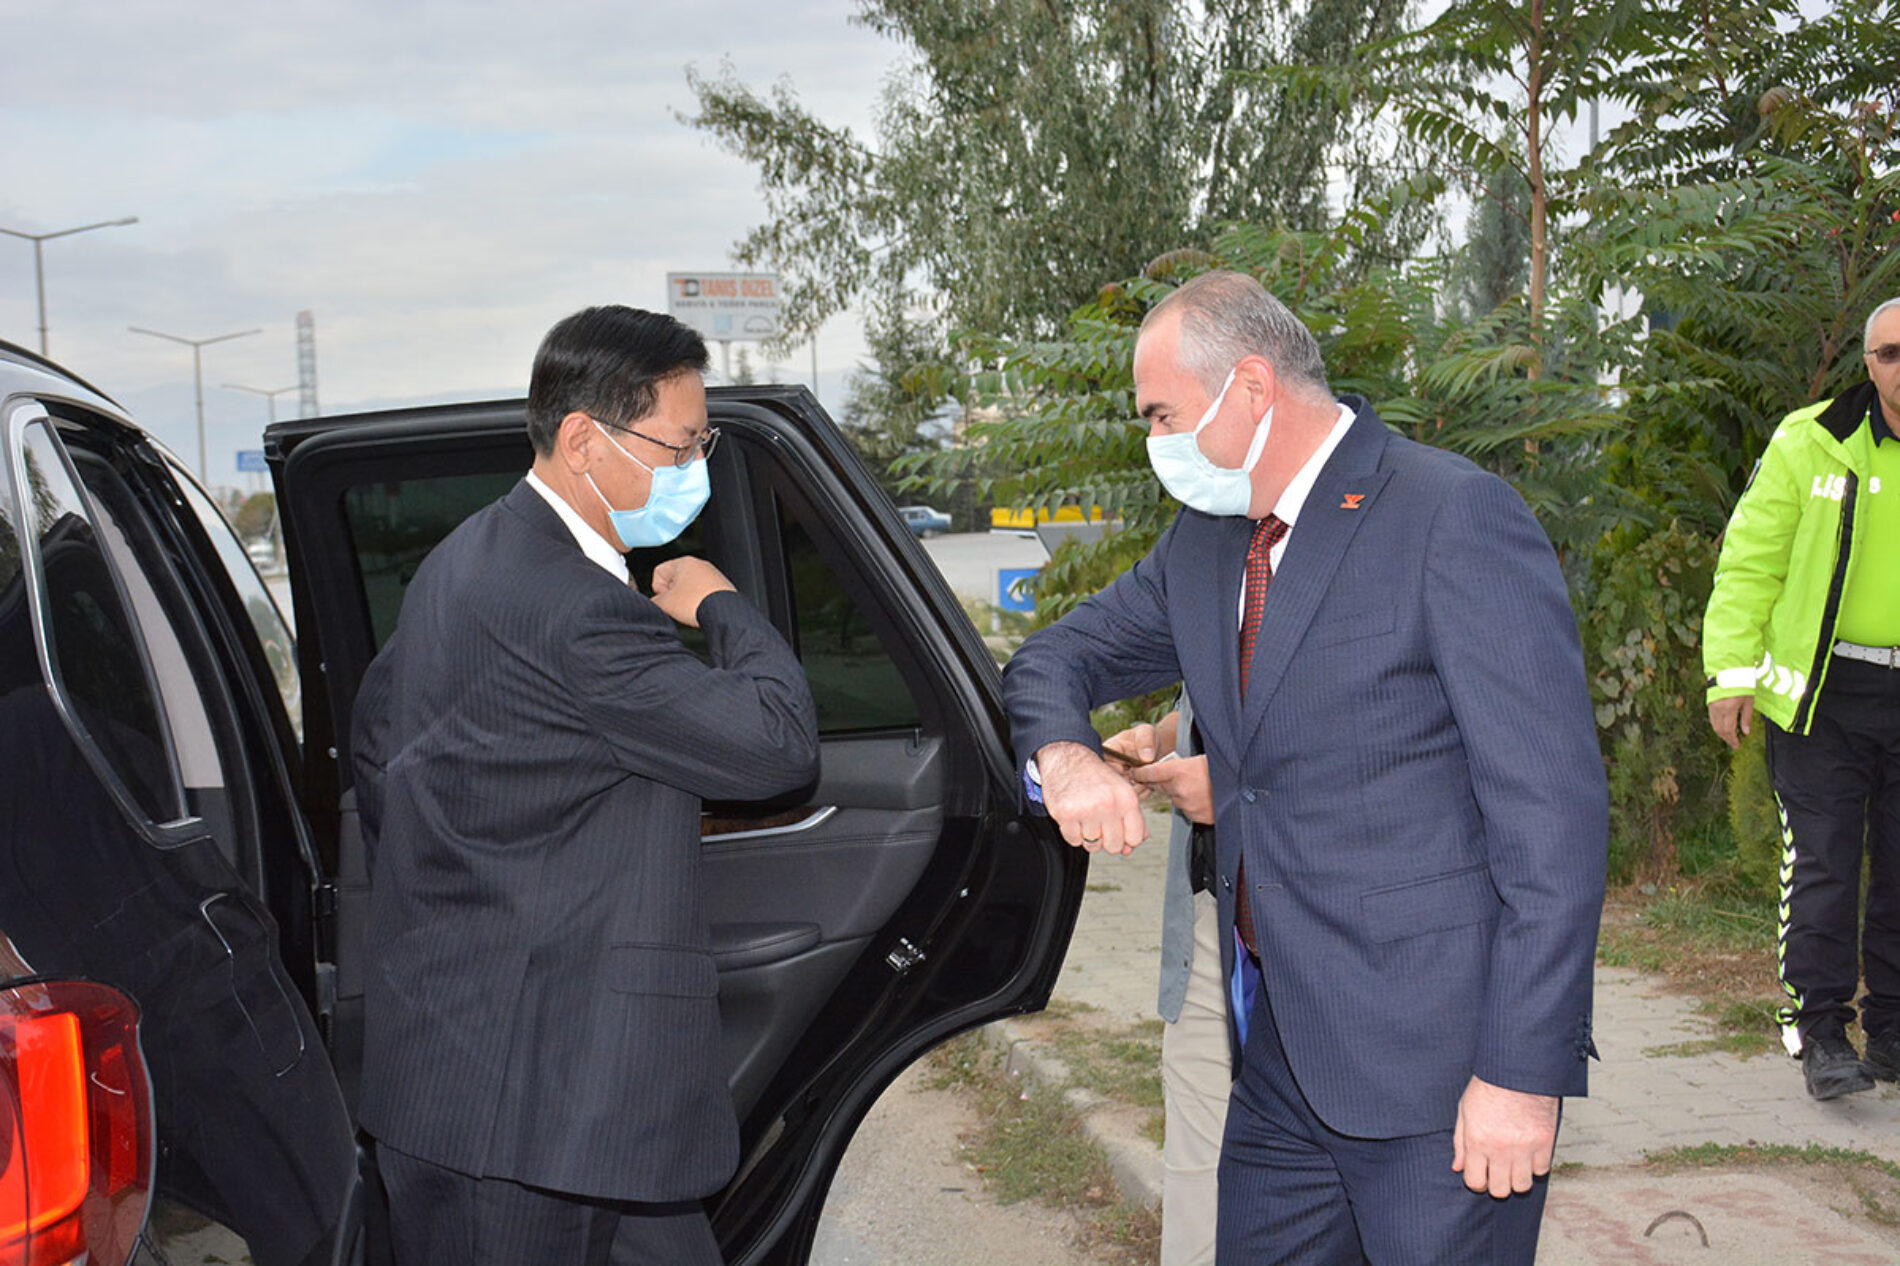 Çin Halk Cumhuriyeti Ankara Büyük Elçisi Sn. LIU Shaobin, Elçi Müsteşarı Sn. LIU Yuhua ve beraberindeki heyetin Afyonkarahisar Ziyareti